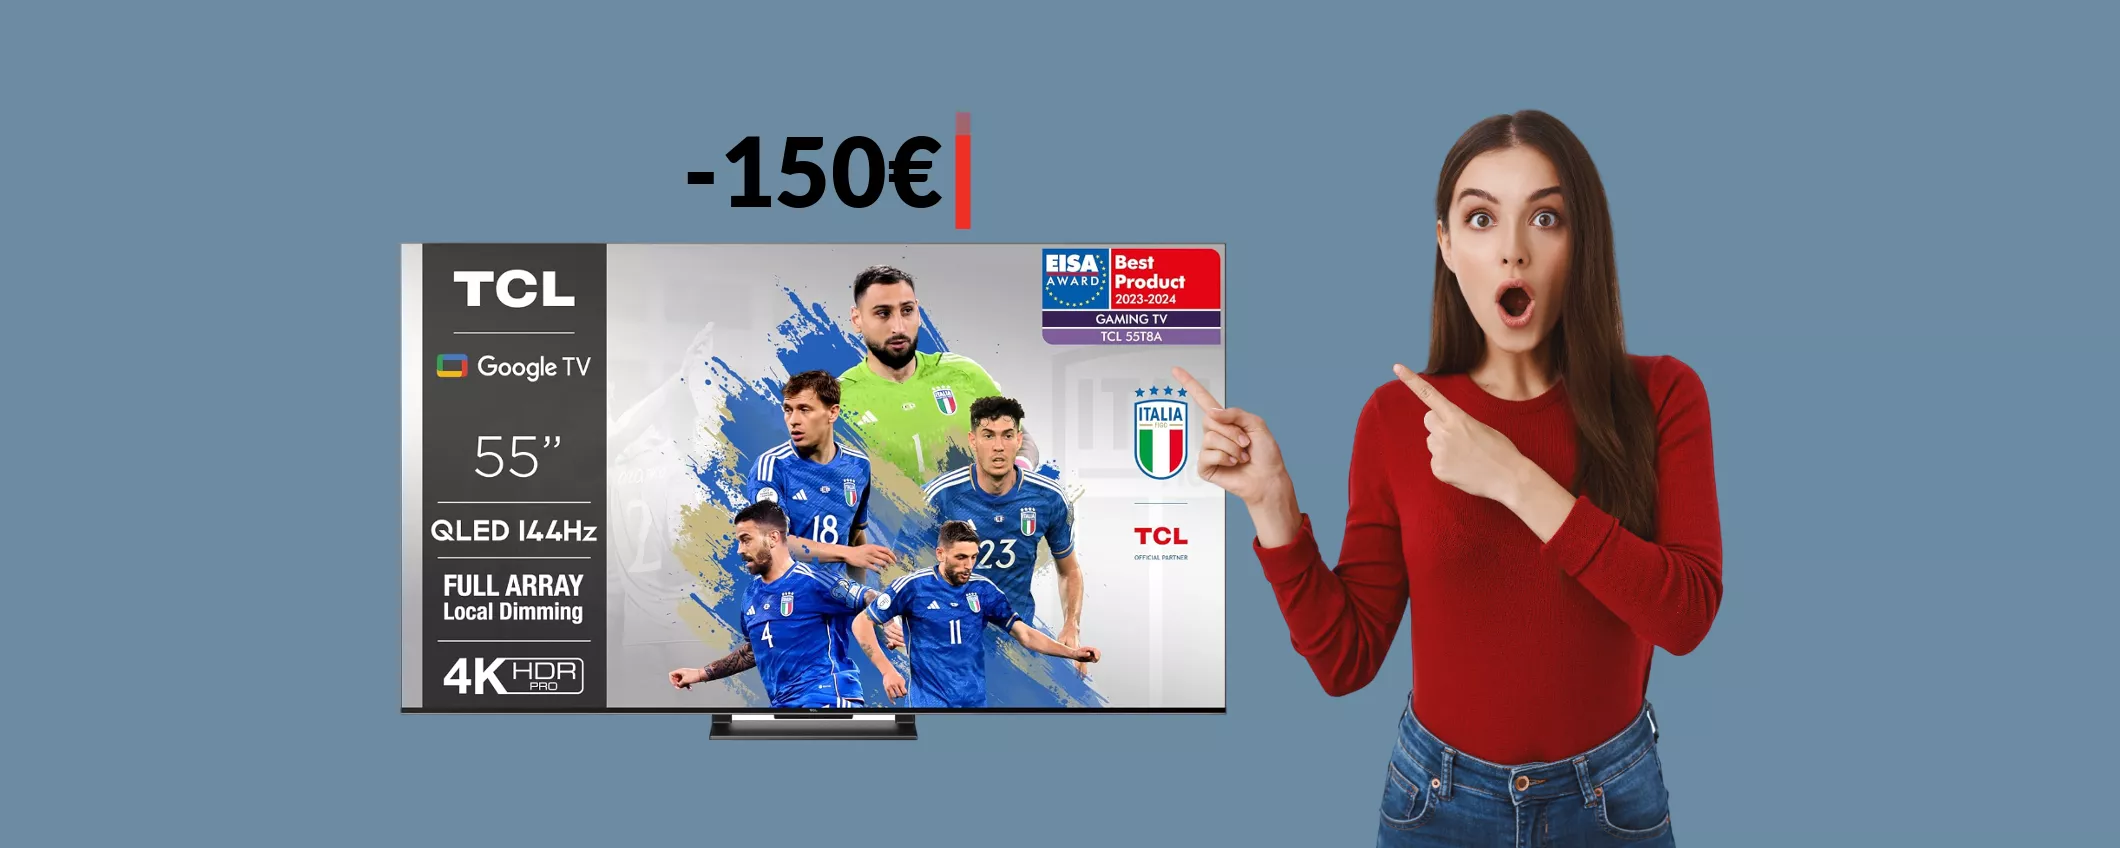 Smart TV 4K TCL 55'': impossibile dire no a questo sconto (-150€)